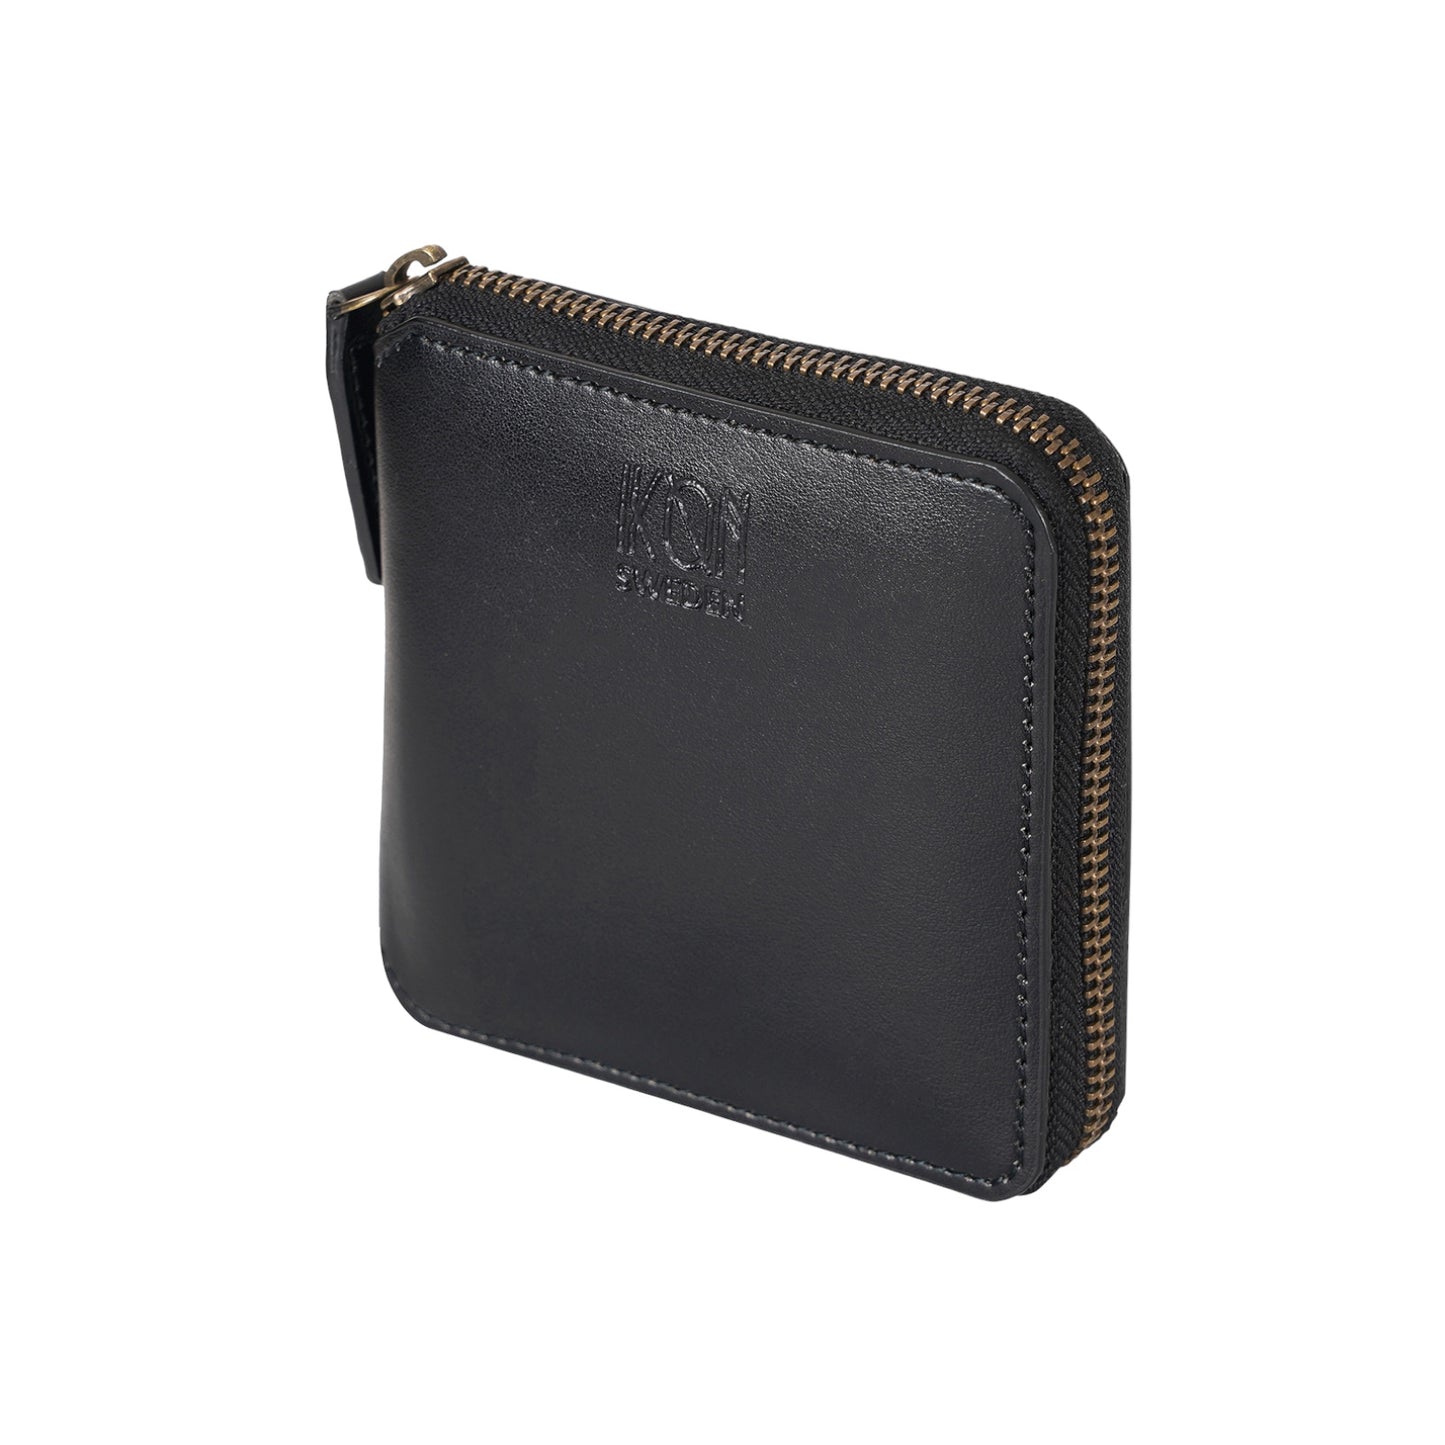 Black small zip wallet